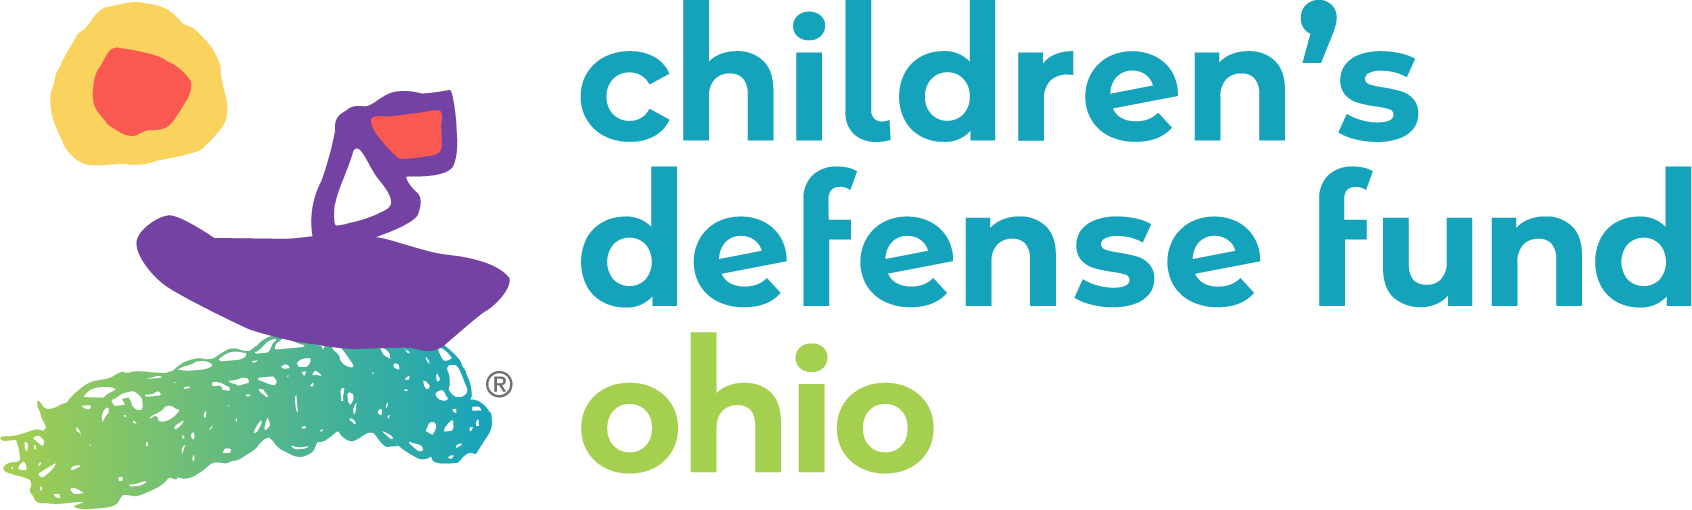 Children's Defense Fund logo